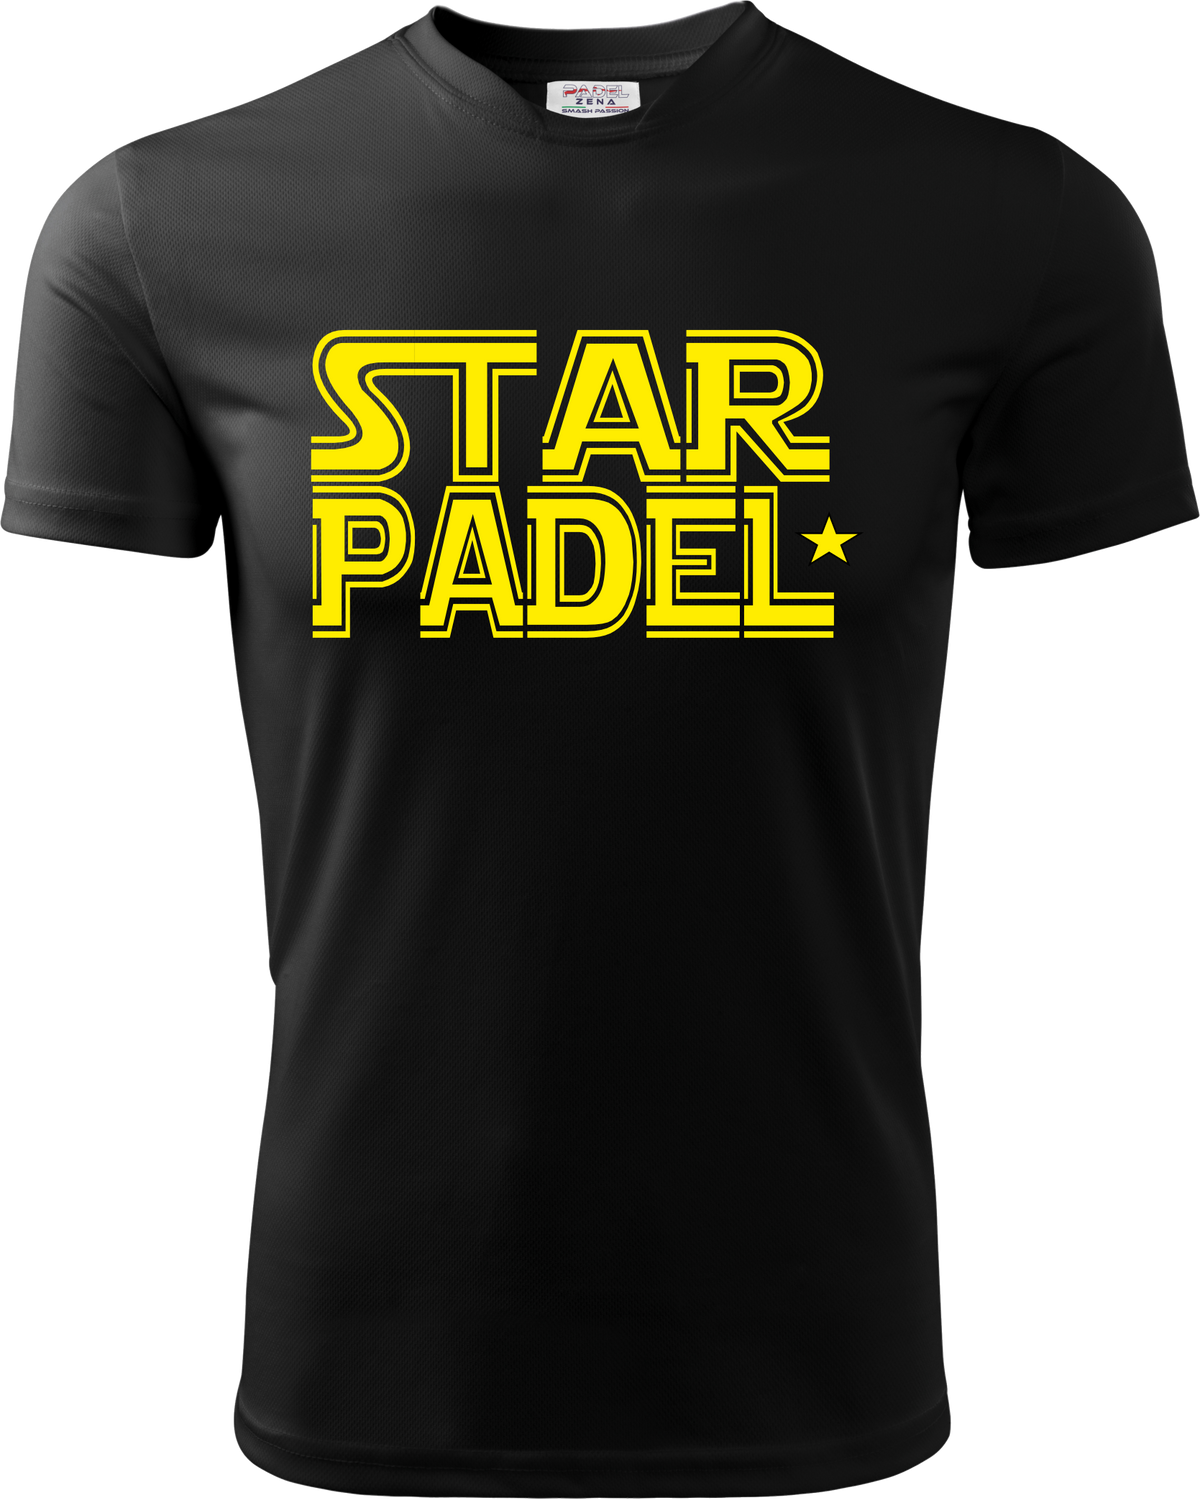 T-Shirt STAR PADEL